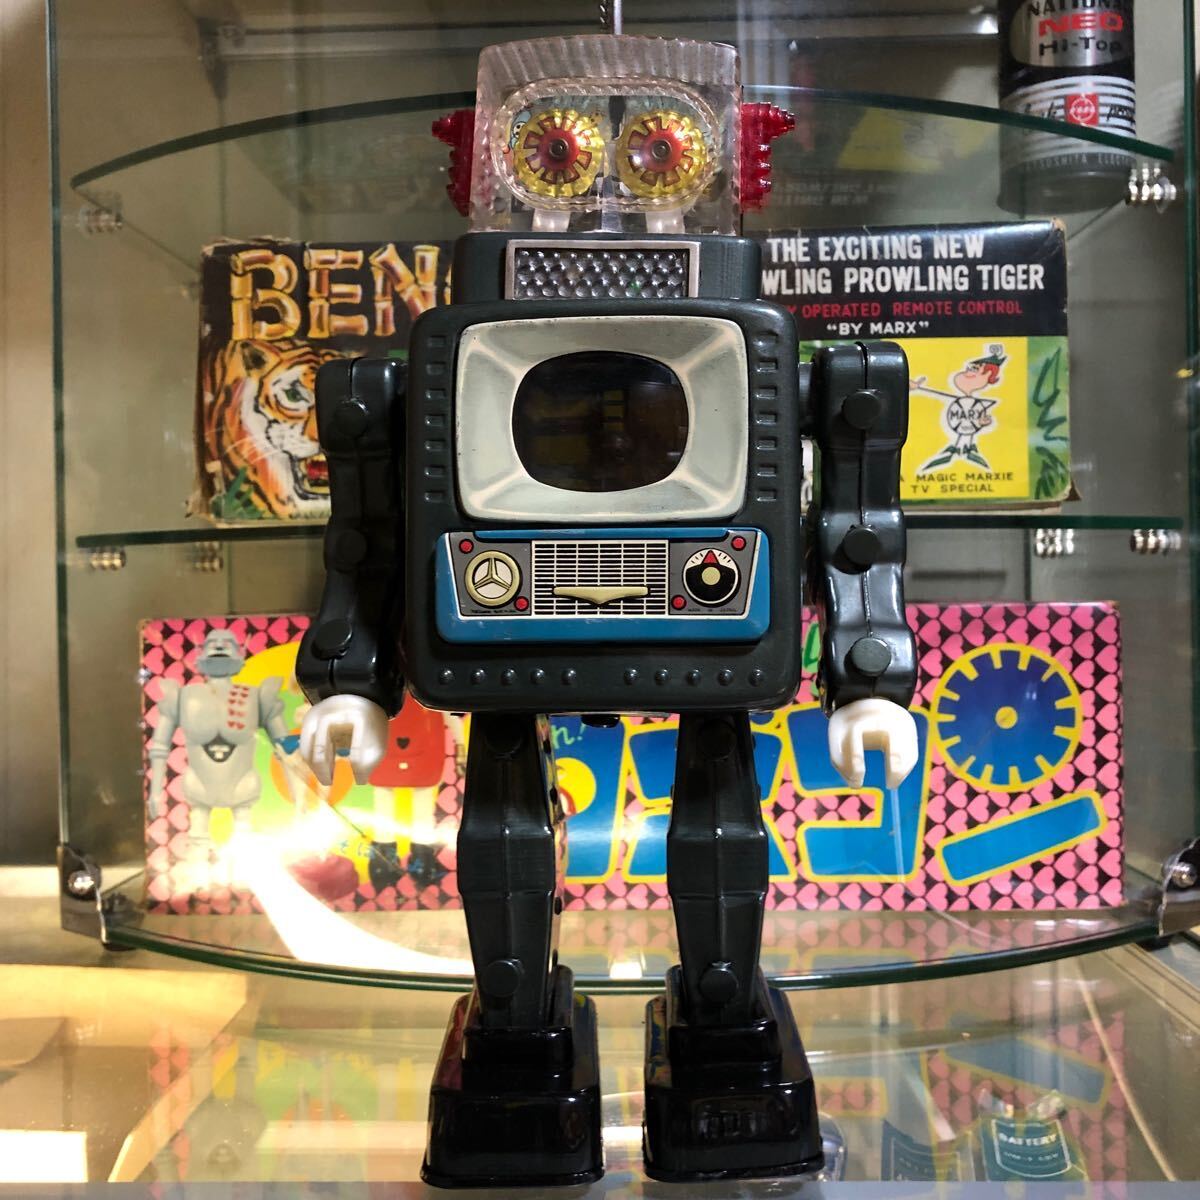 ブリキロボット テレビジョンスペースマン アルプス商事 野村トーイ ヨネザワ玩具 ブリキのおもちゃ アンティークロボット ロボットの画像1